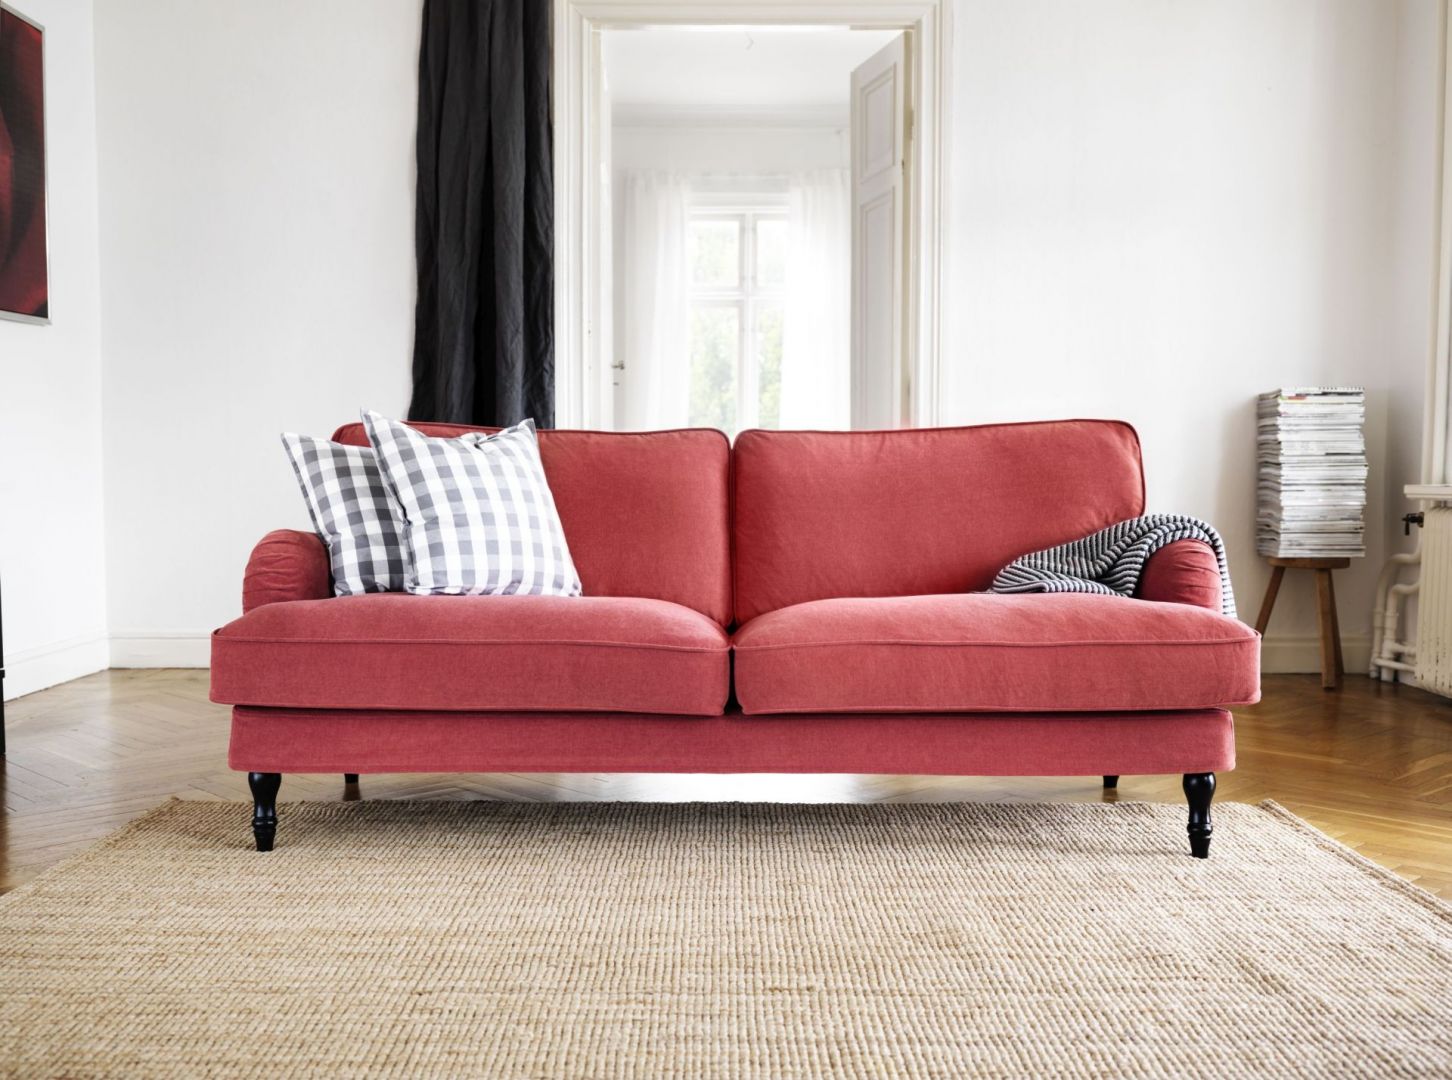 Sofa Stocksund dostępna jest w czterech przyjemnych kolorach, a na wypadek zabrudzeń pokrowiec można zdjąć do prania. Cena: 1.999 zł. Fot. IKEA